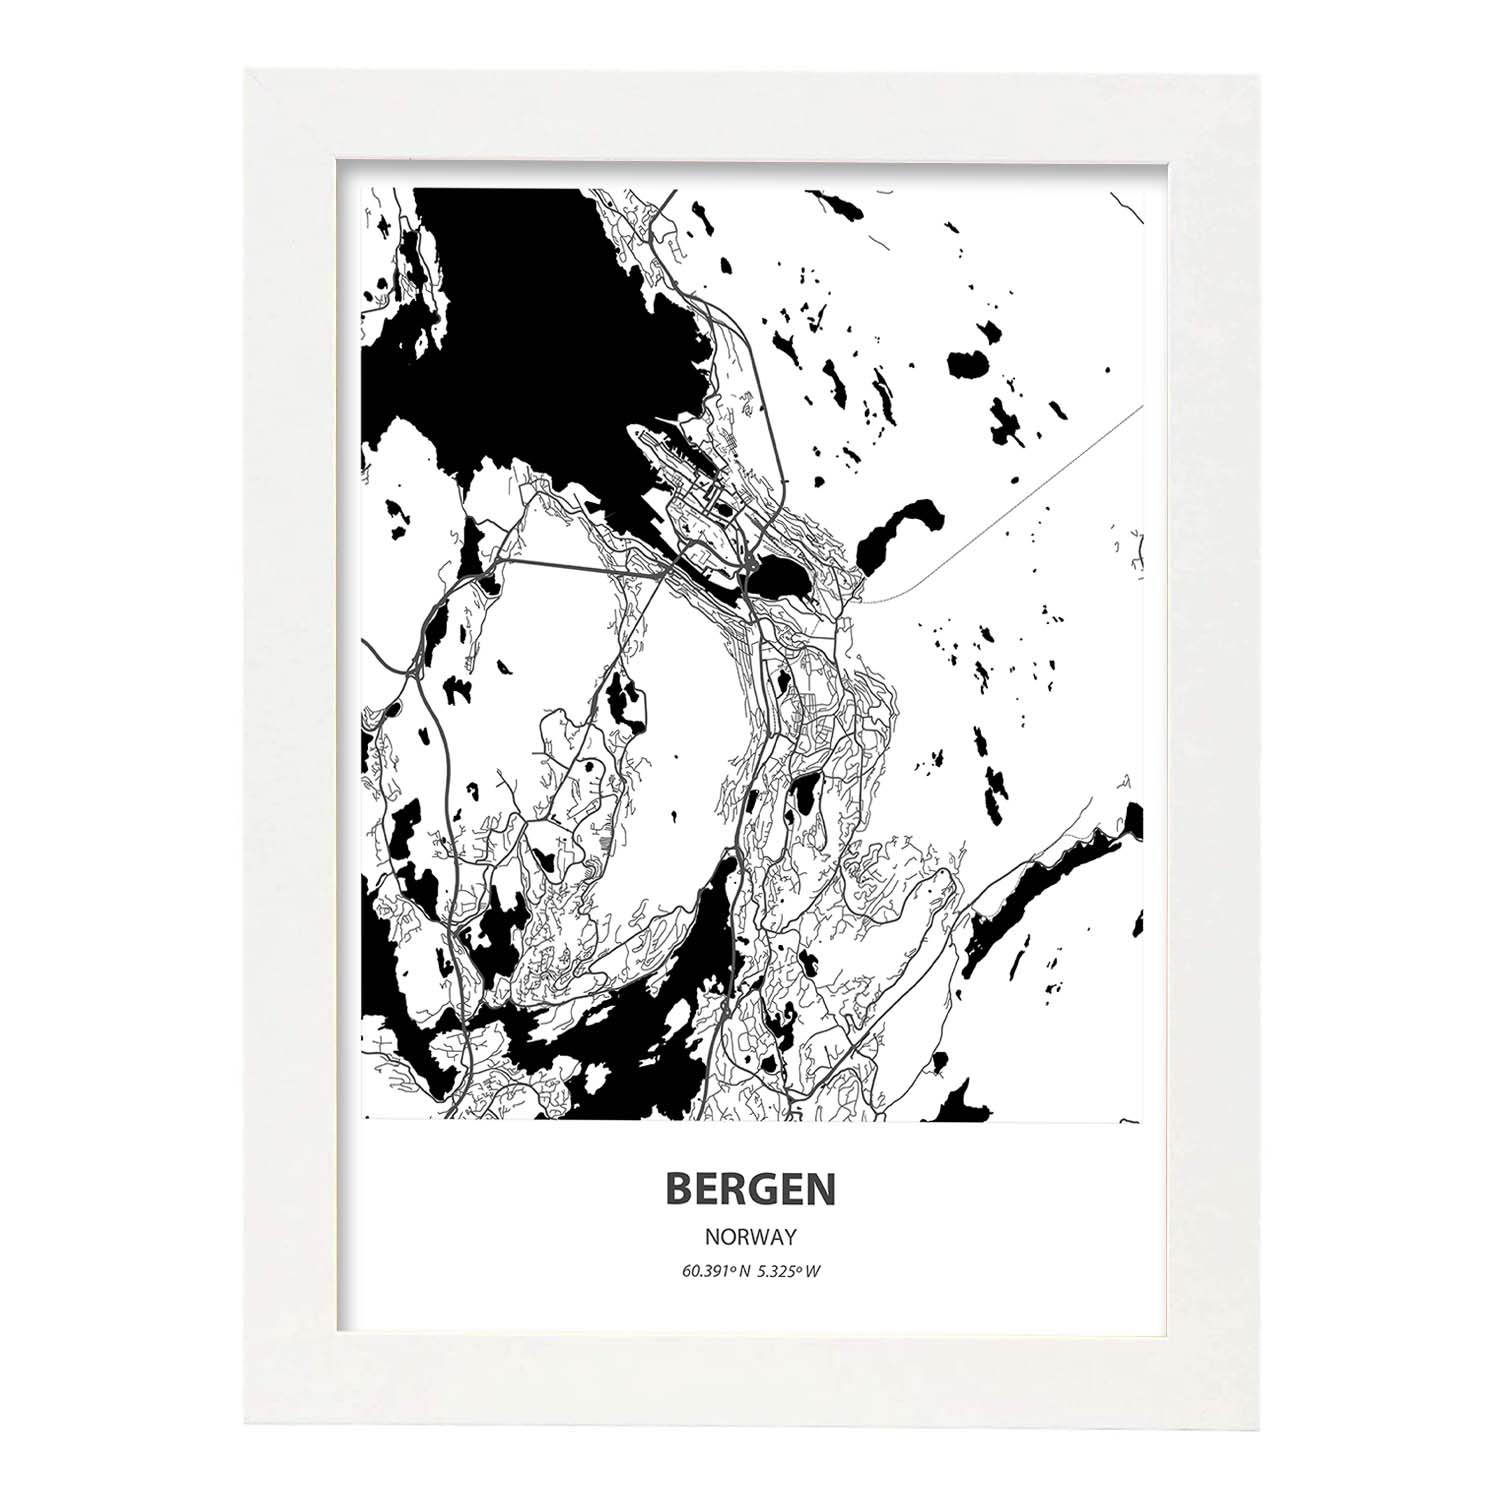 Poster con mapa de Bergen - Noruega. Láminas de ciudades del norte de Europa con mares y ríos en color negro.-Artwork-Nacnic-A4-Marco Blanco-Nacnic Estudio SL